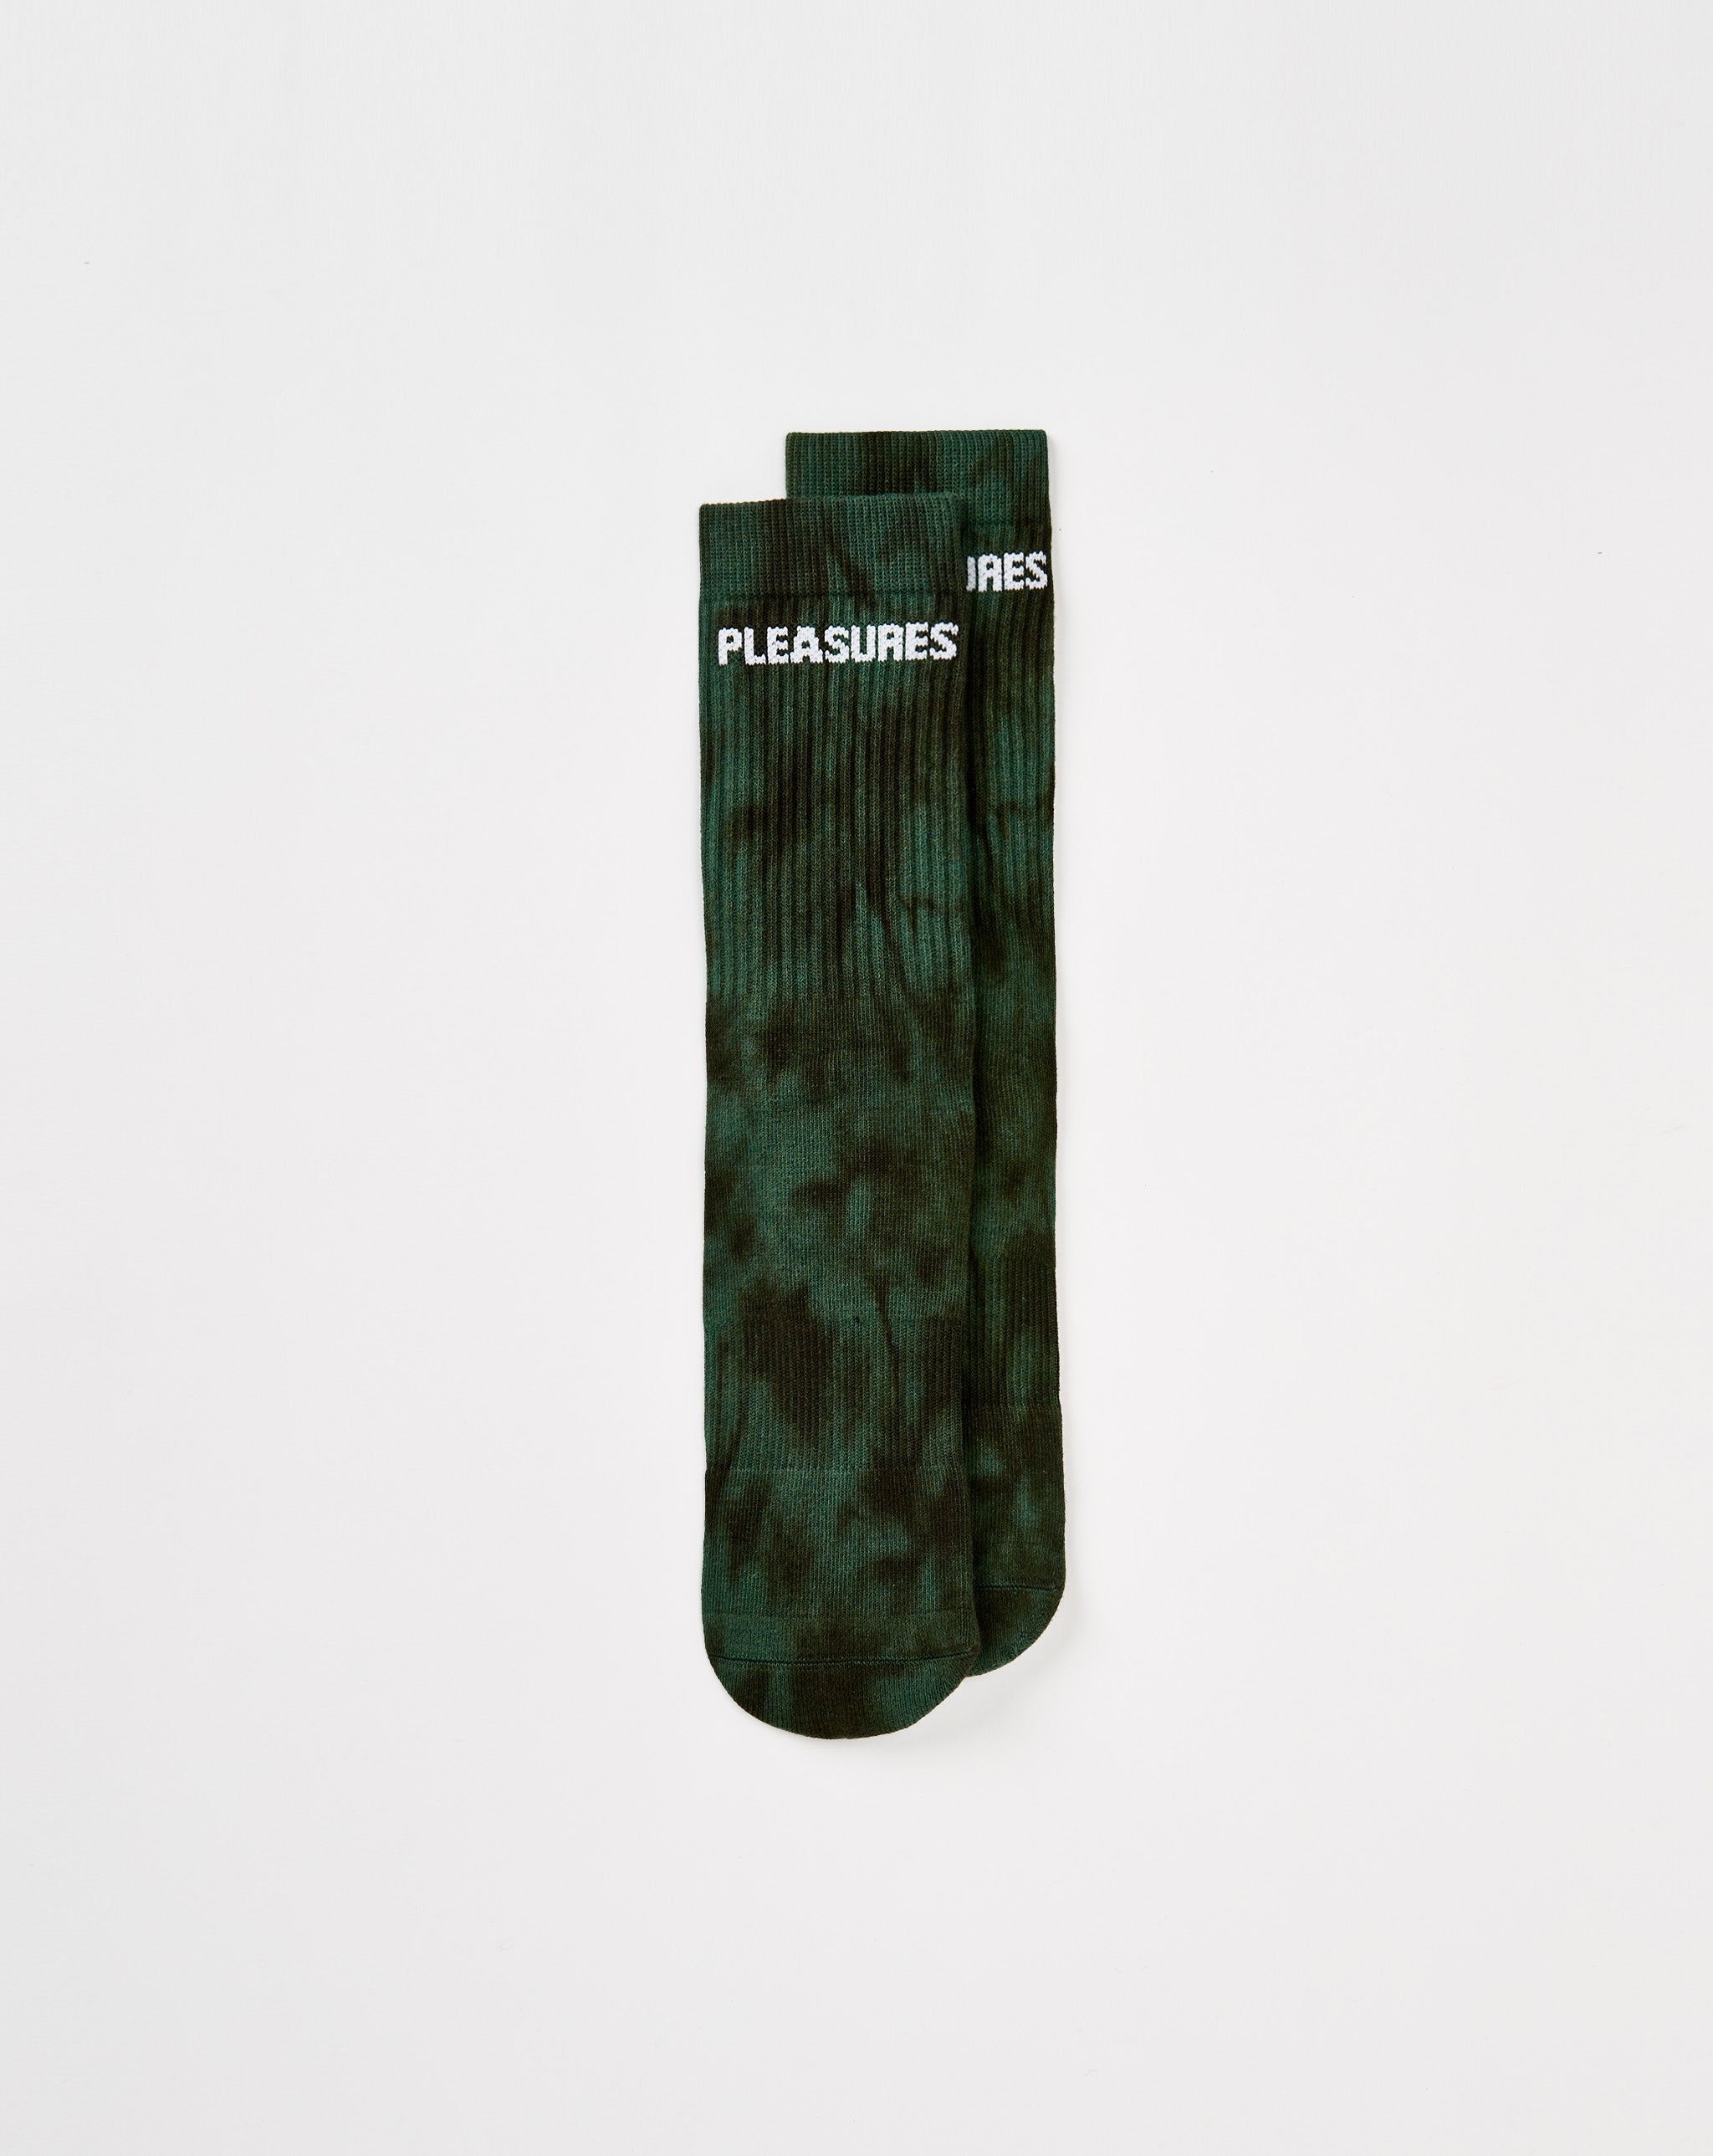 Pleasures Indie Dye Socks  - XHIBITION